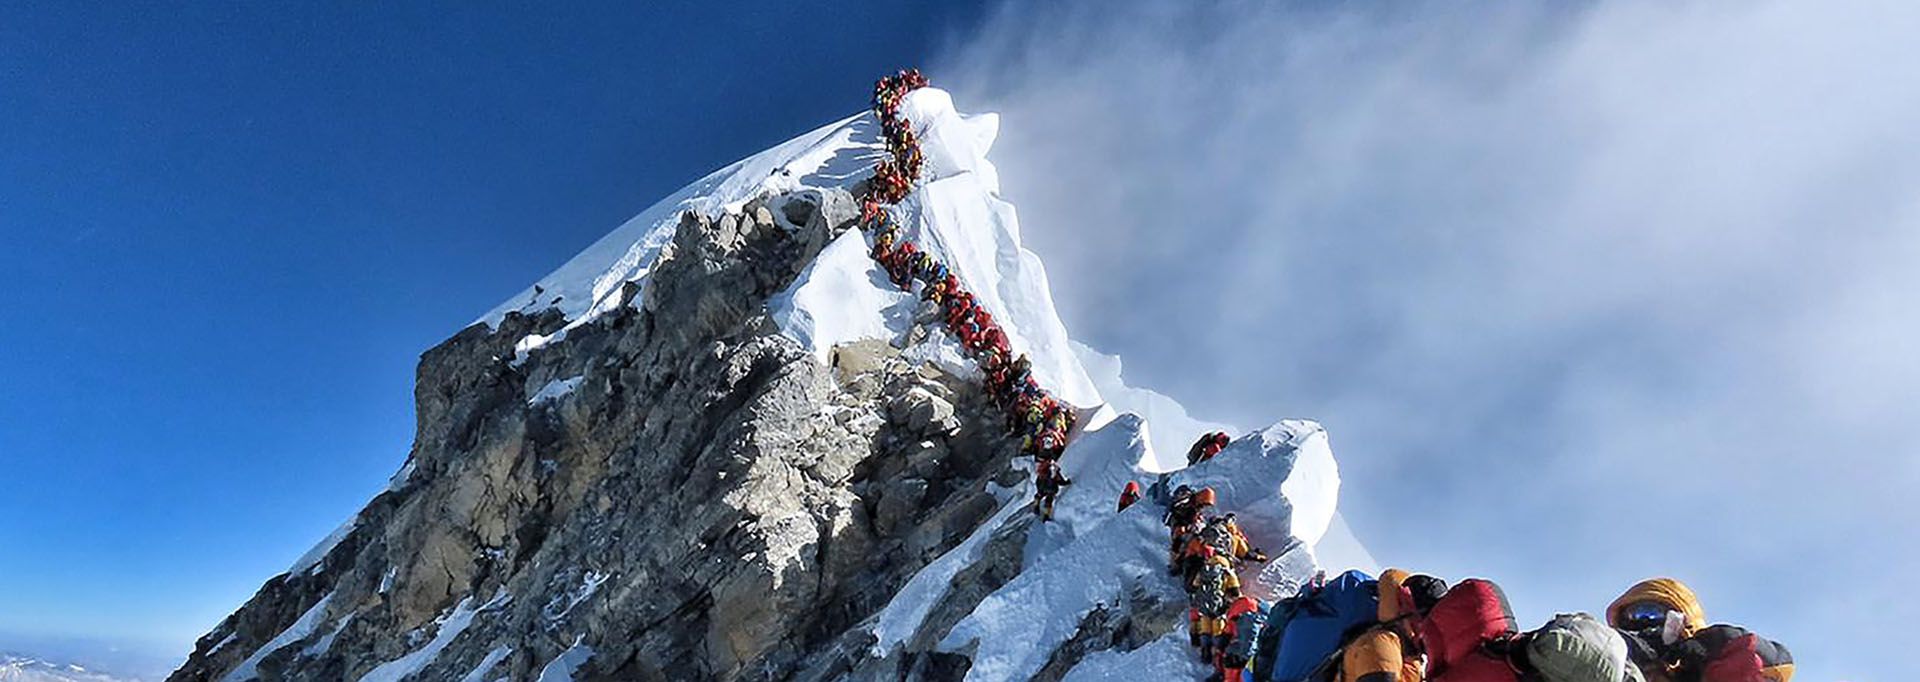 Esta foto tomada el 22 de mayo de 2019 muestra el intenso tráfico de alpinistas que se alinean para pararse en la cima del Monte Everest (Foto: Folleto / Proyecto posible / AFP)